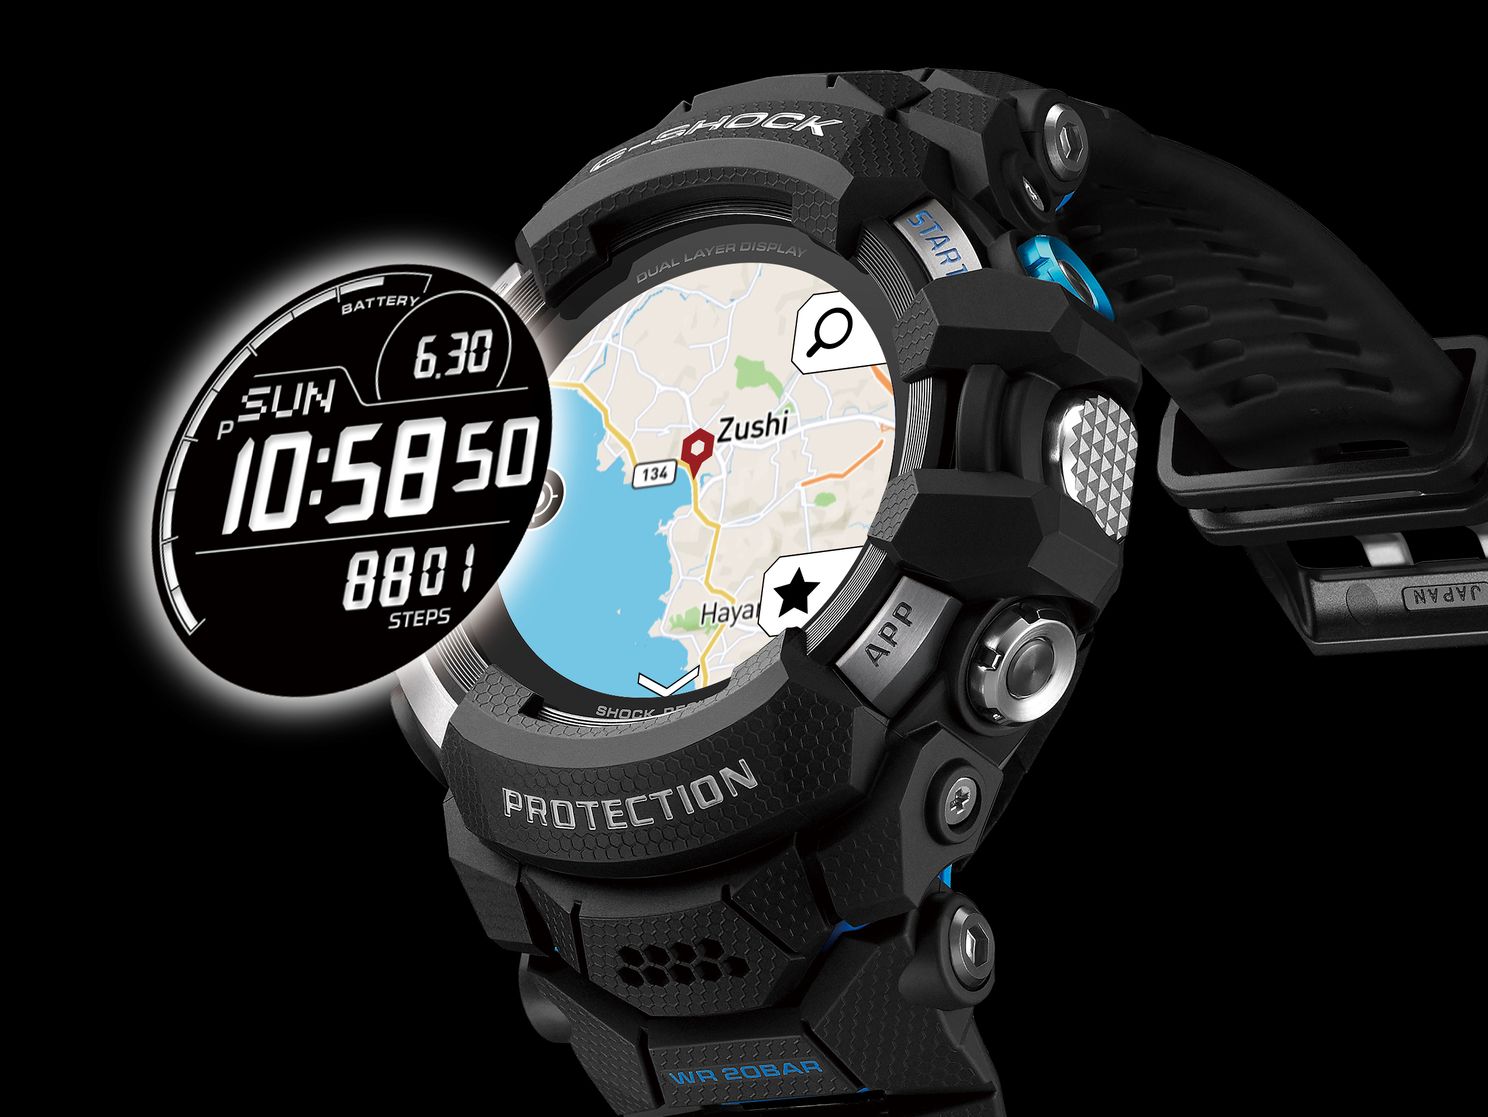 Uitdrukking Verward zijn Brutaal Dit is de nieuwe en gigantische Casio G-SHOCK smartwatch met Wear OS